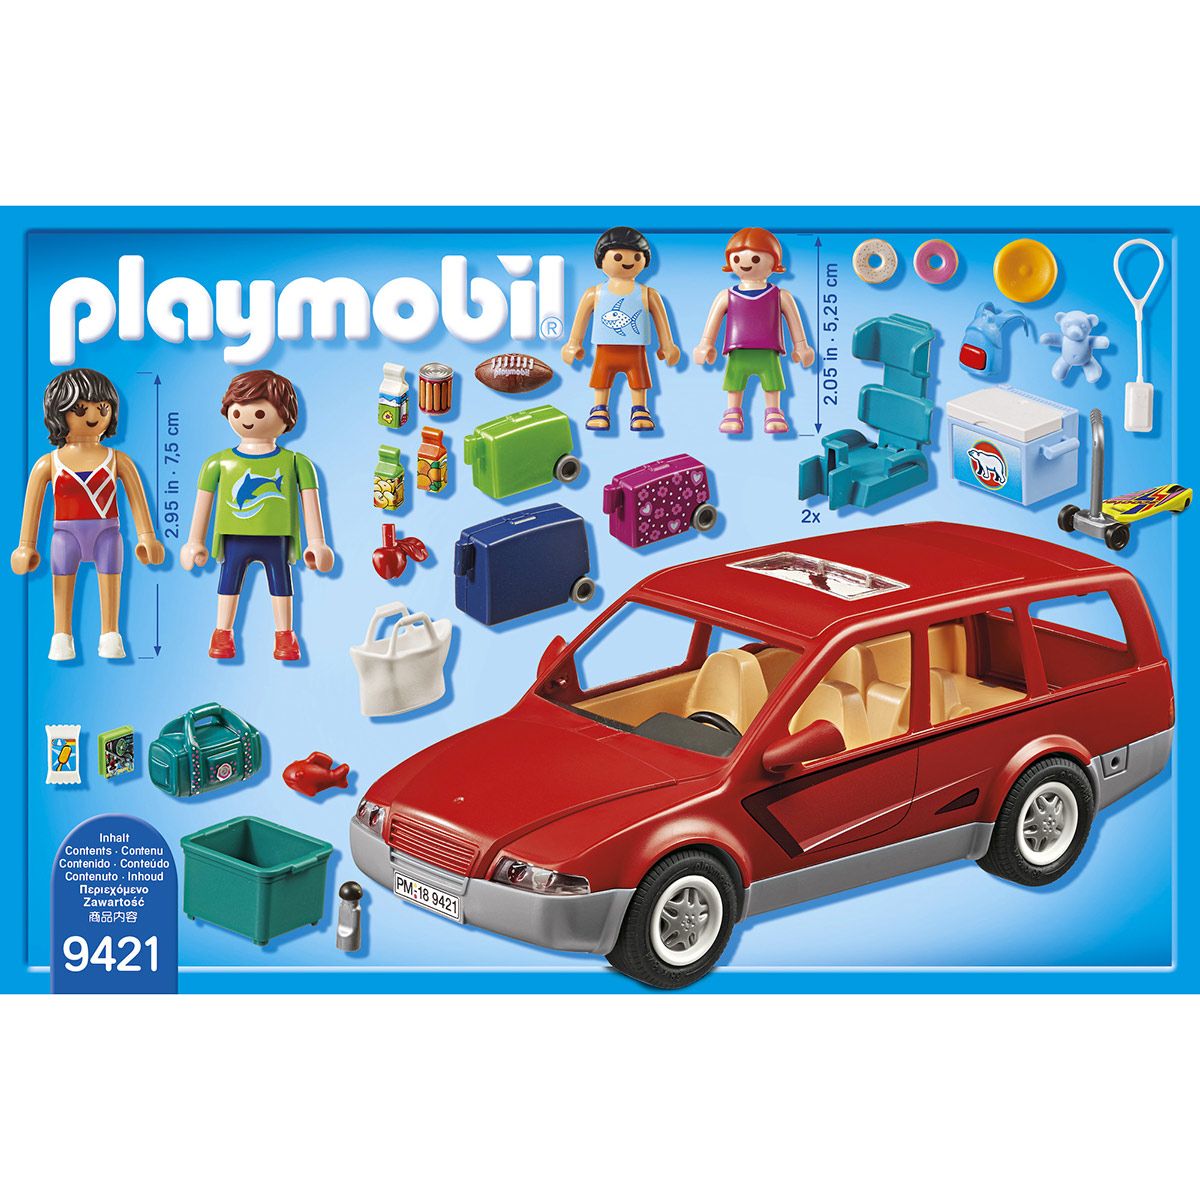 playmobil family fun voiture et bateau